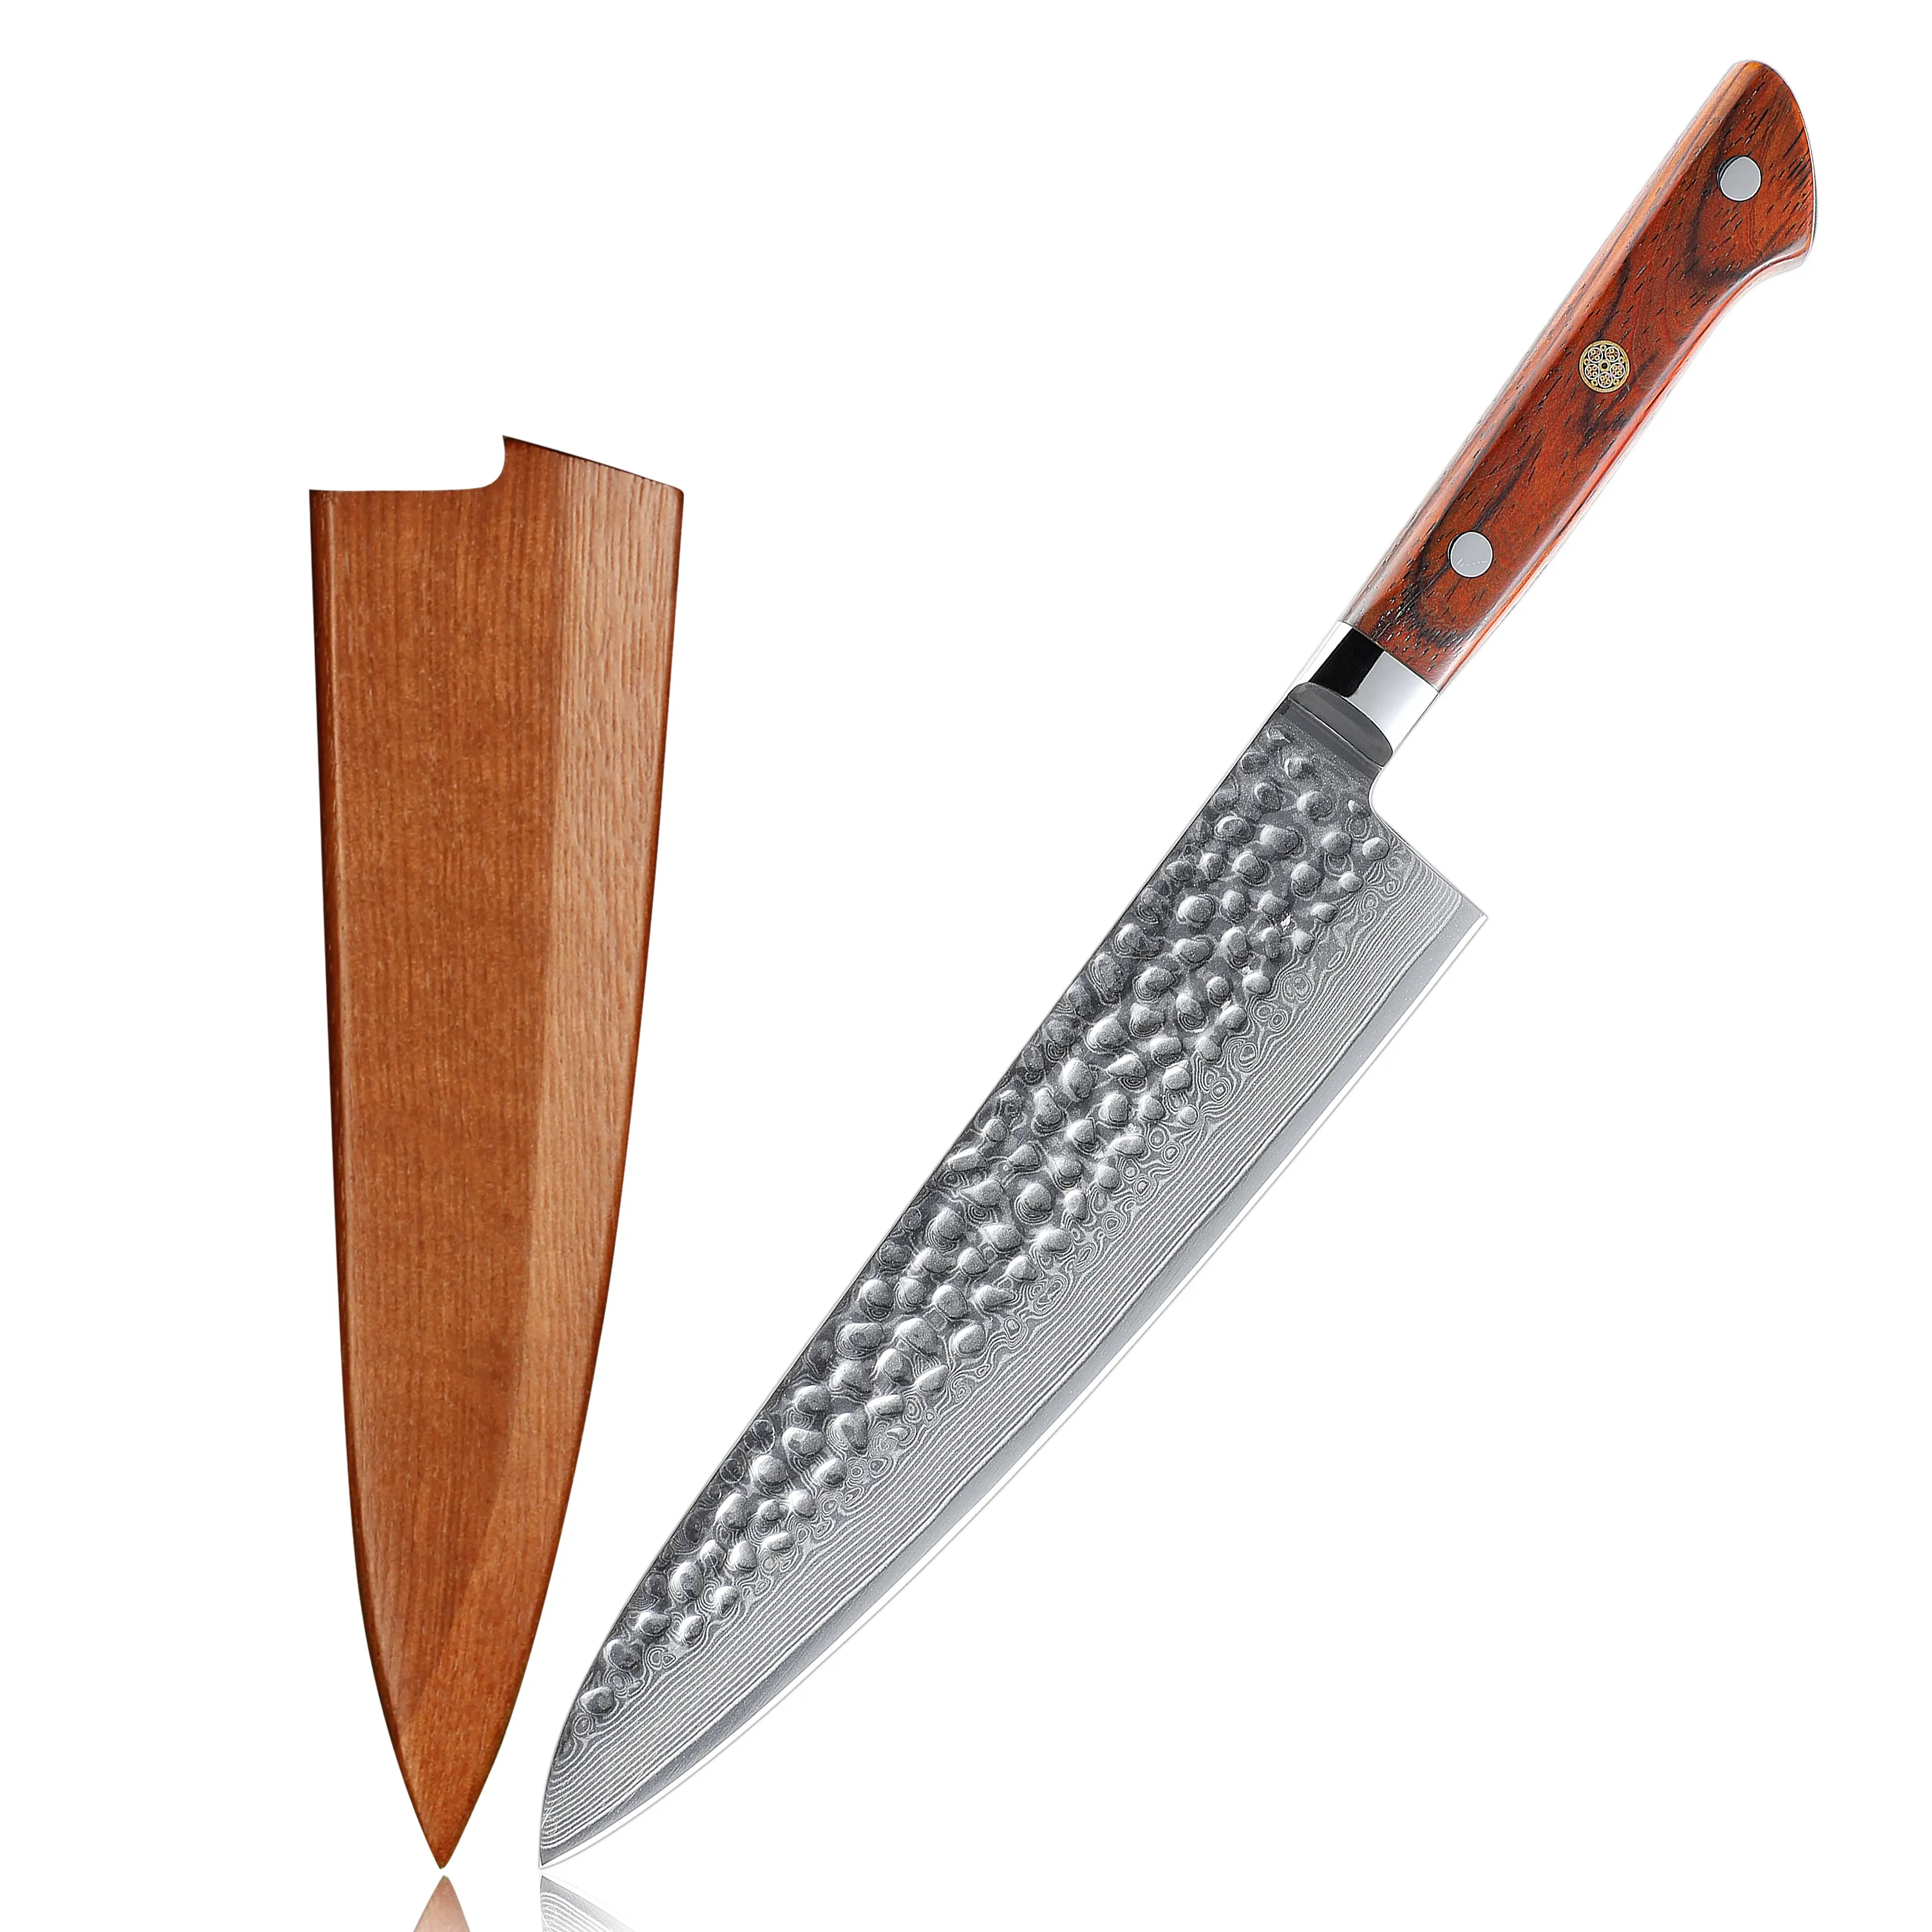 Yüksek kaliteli çekiç vg 10 şef bıçağı şam çelik mutfak japon şef bıçağı